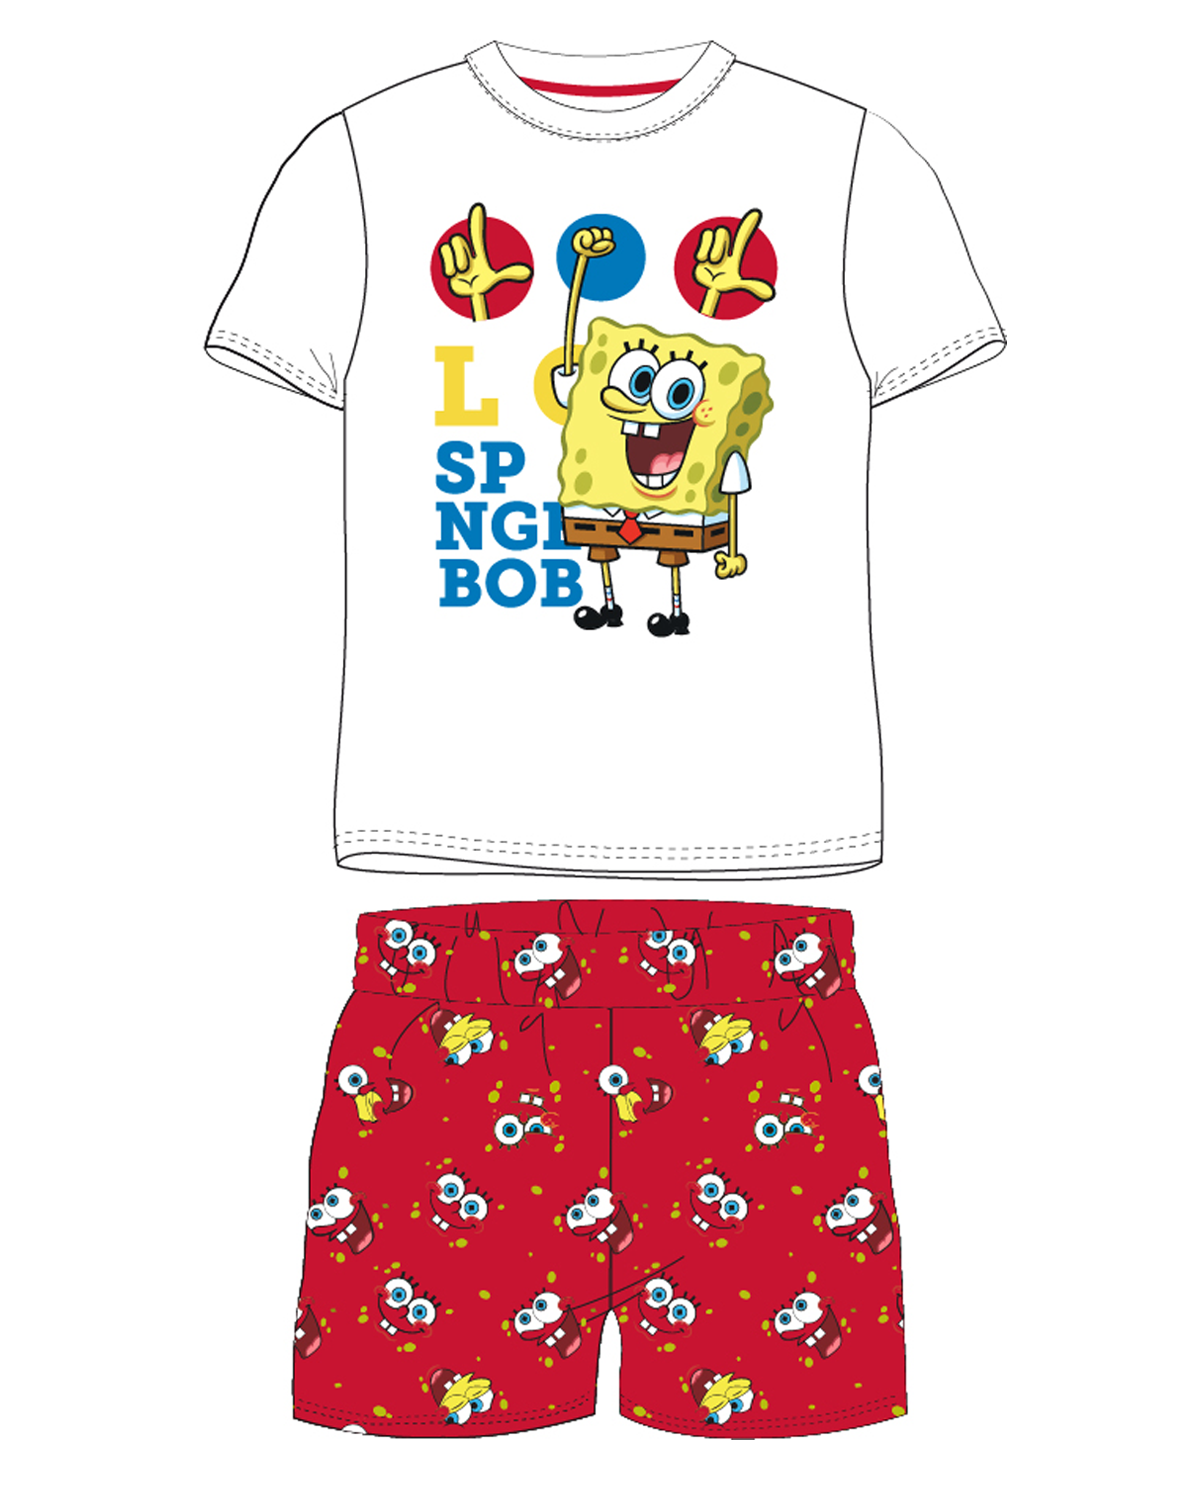 SpongeBob v kalhotách - licence Chlapecké pyžamo - SpongeBob v kalhotách 5204203W, bílá / červená Barva: Mix barev, Velikost: 122